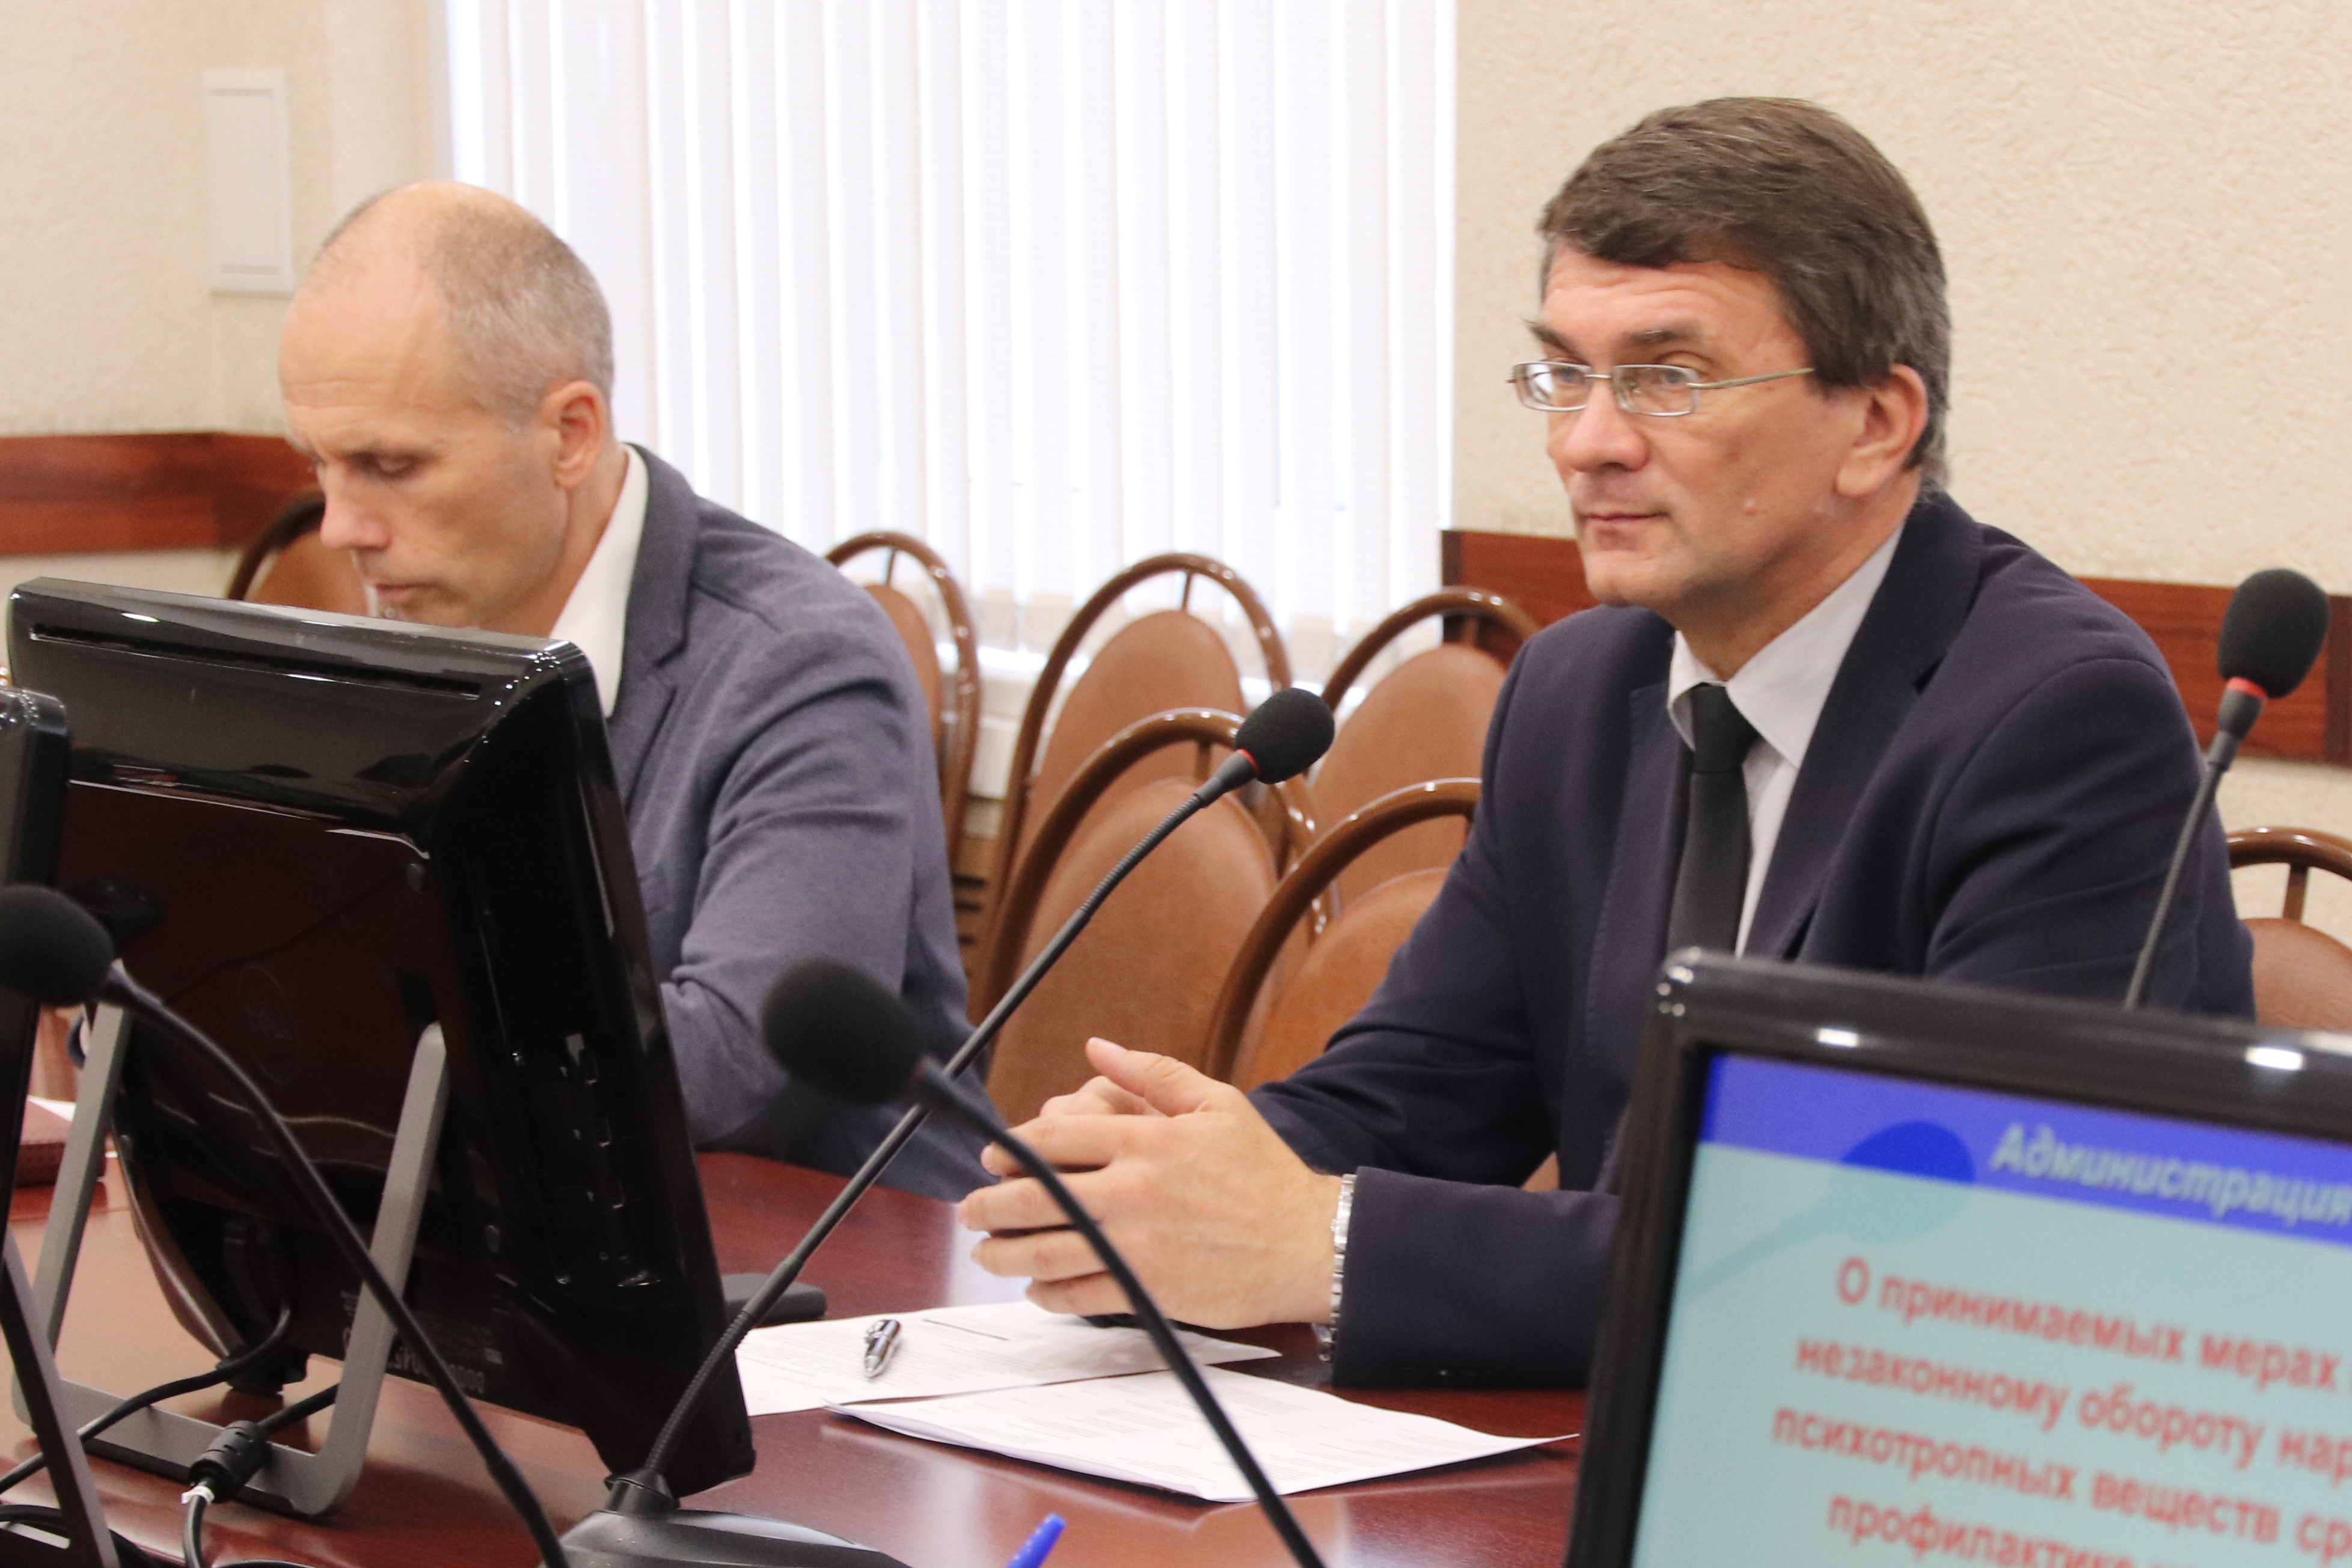 Состоялось очередное заседание комиссии по делам несовершеннолетних и защите их прав по Фрунзенскому району.